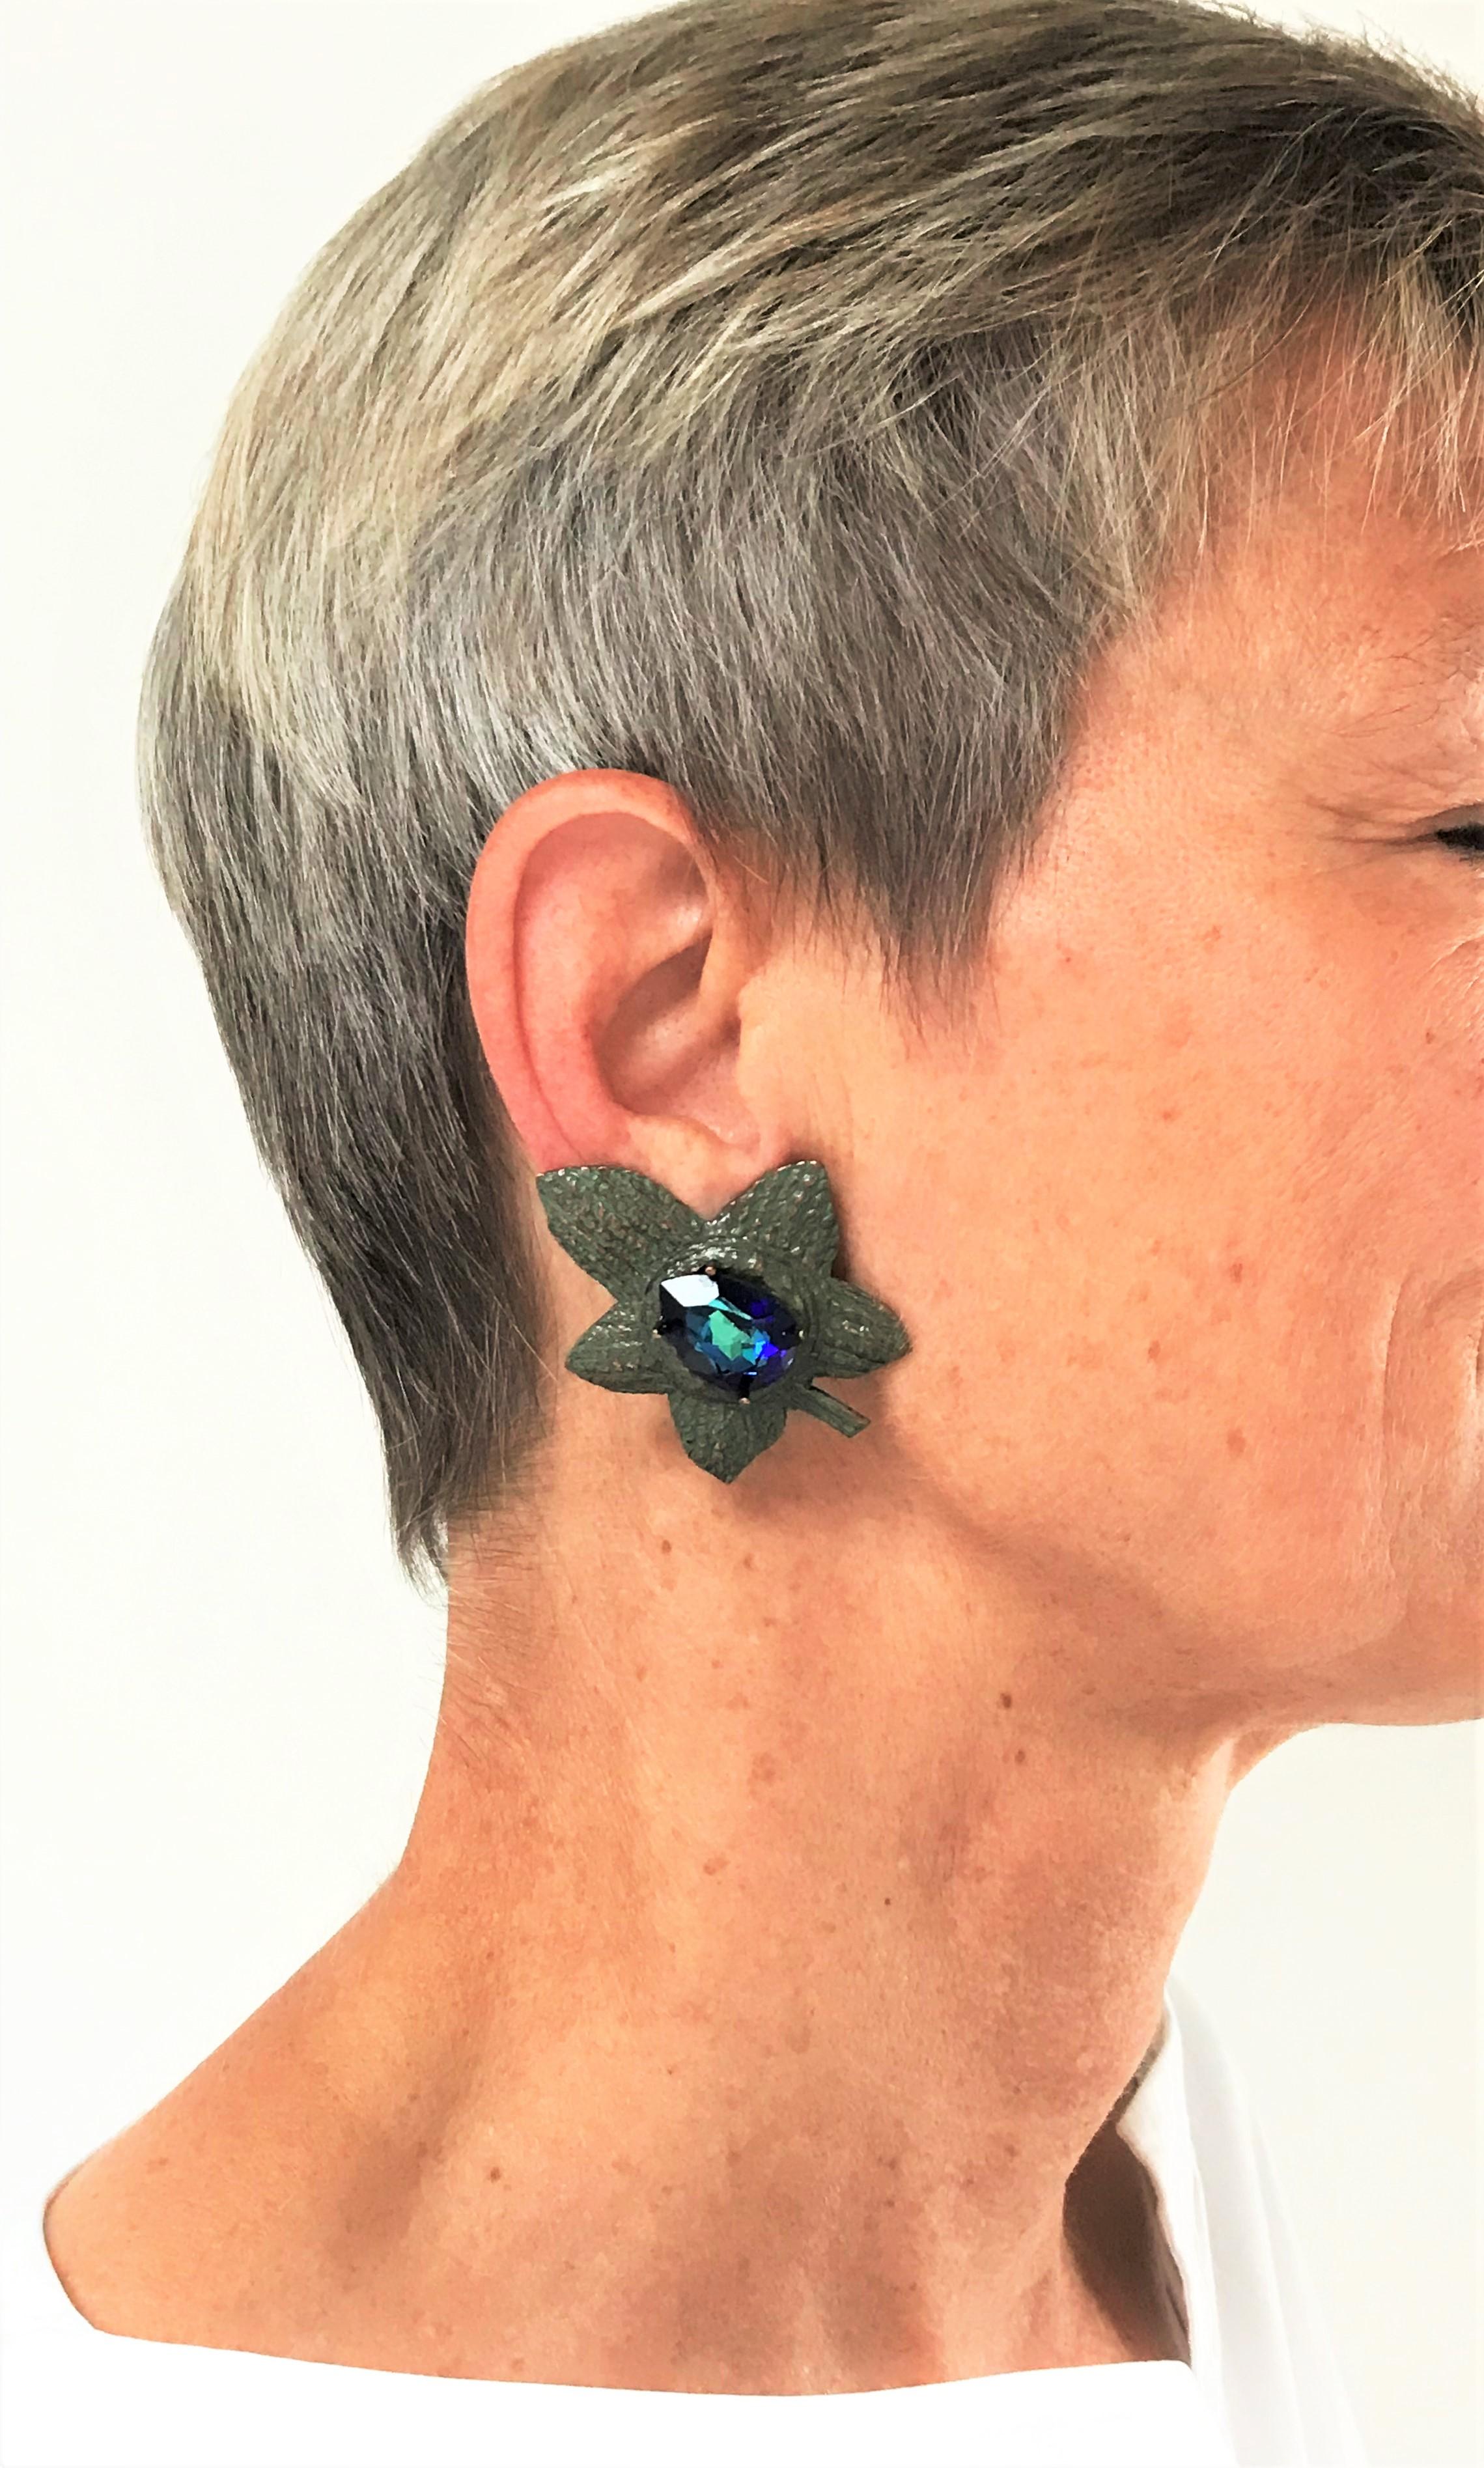 Clips d'oreille Yves Sant Laurent Rive Gauch Paris en forme de feuille avec coupe irisée bleu-vert  strass des années 1980. C'est un clip d'oreille très extraordinaire d'YSL. 
Mesures : Hauteur 4,9 cm x 3,9 cm, strass blau 2 cm x 1,5 cm. Le clip est